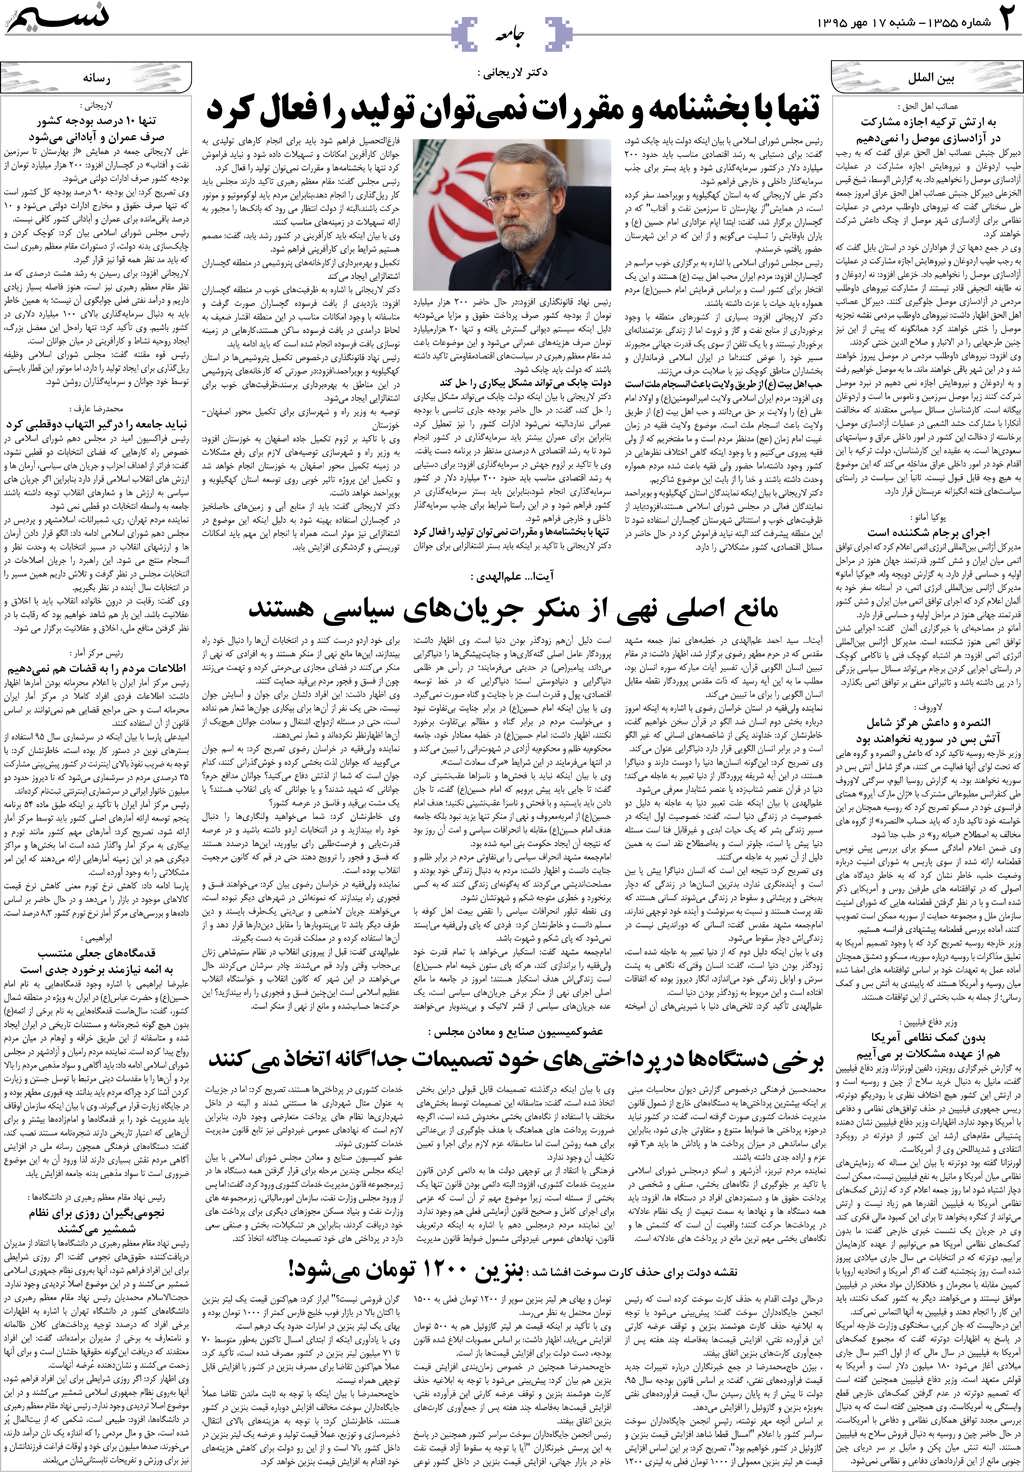 صفحه جامعه روزنامه نسیم شماره 1355